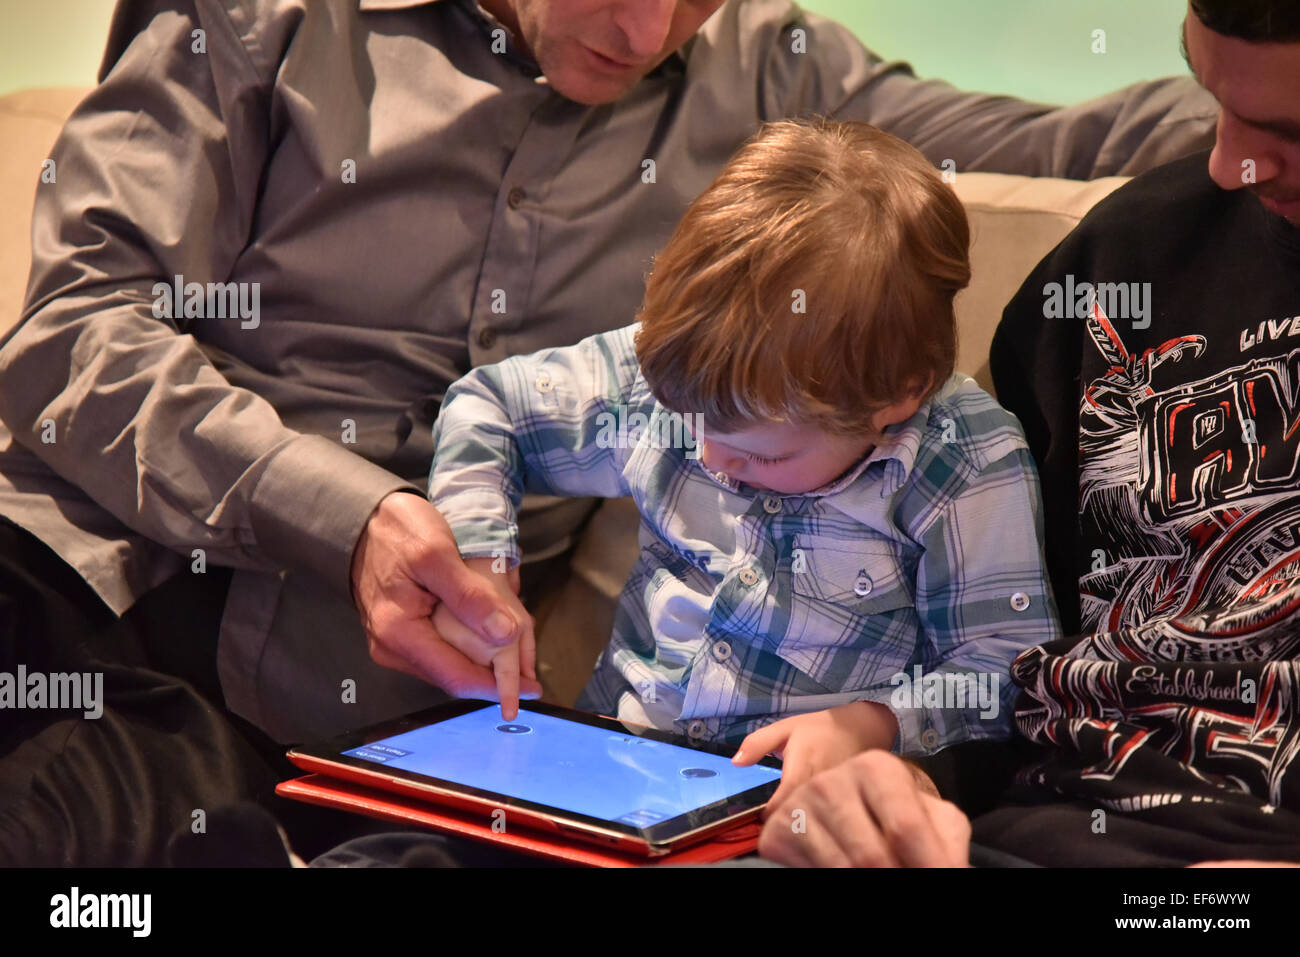 Ein kleiner Junge (2 1/2 Jahre) spielen auf einem iPad saß zwischen zwei Erwachsenen, die ihm helfen spielen Stockfoto